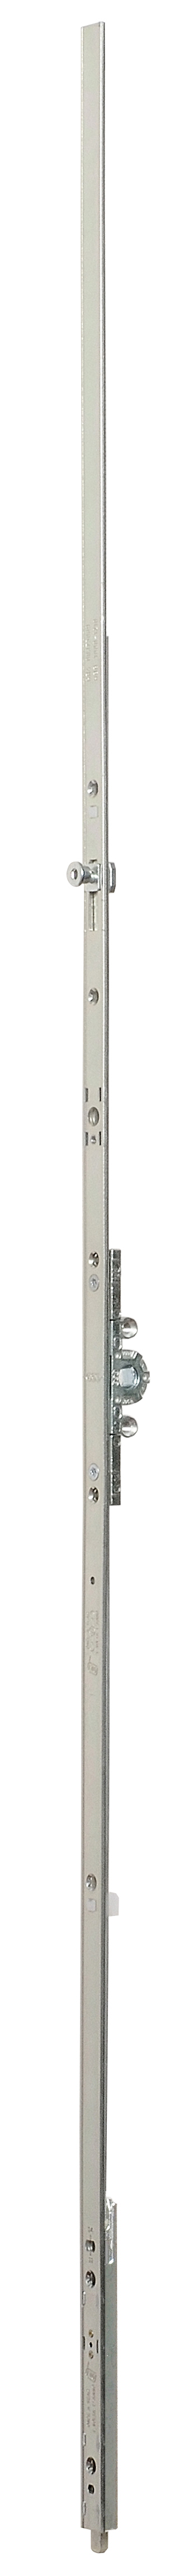 AGB -  Cremonese ARTECH anta a bandiera altezza maniglia fissa con puntale chiusura ad espansione per seconda anta - gr / dim. 05 - entrata 15 - alt. man. 500 - lbb/hbb 1200 - 1410